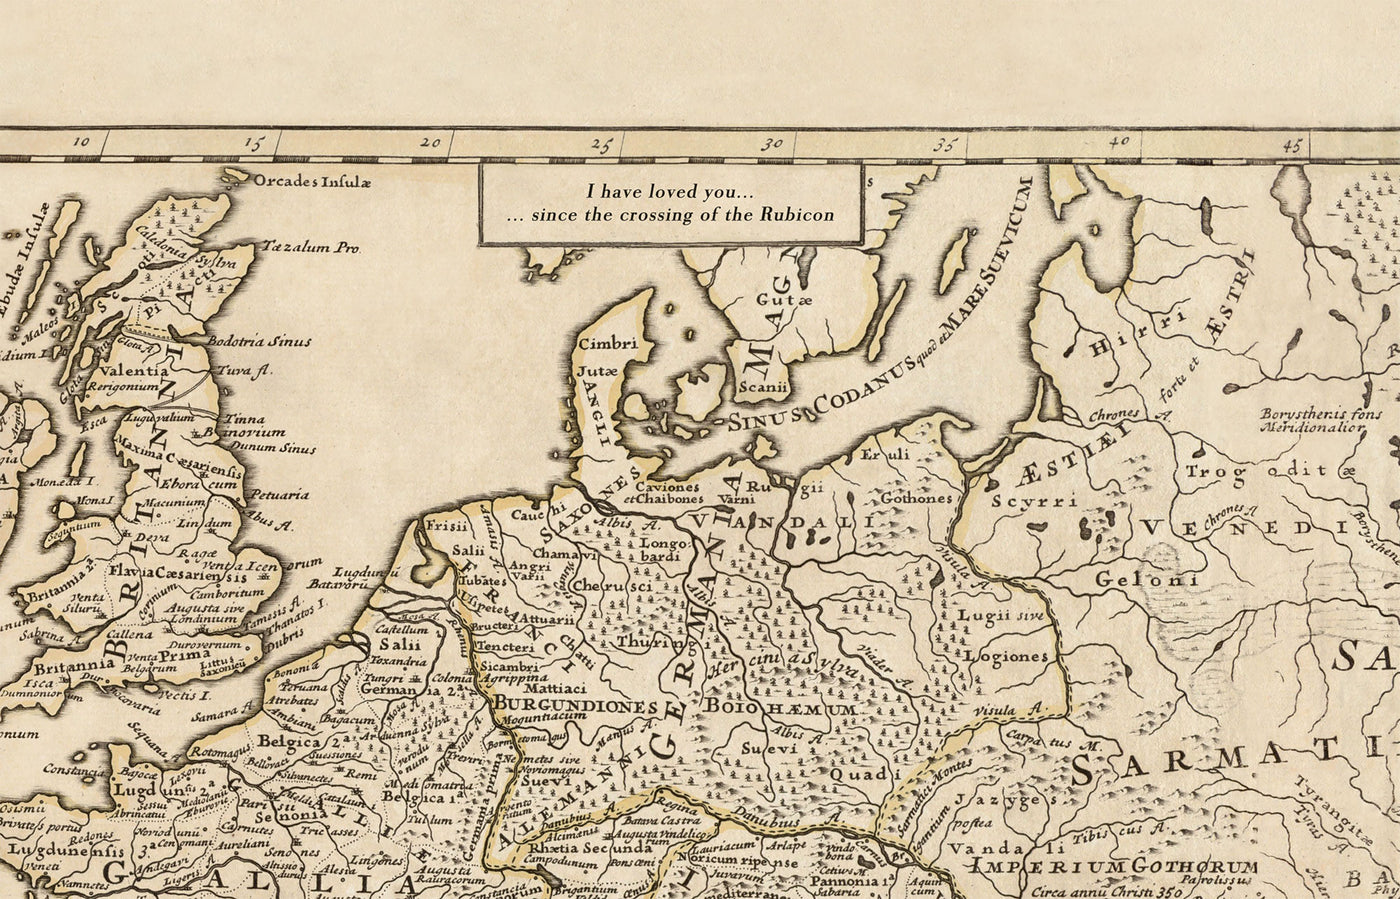 Ancienne carte de l'ouest de Londres en 1746 par John Rocque - Brentford, Ealing, Acton, Hanwell, Chiswick, W3, W4, W5, W7, W13